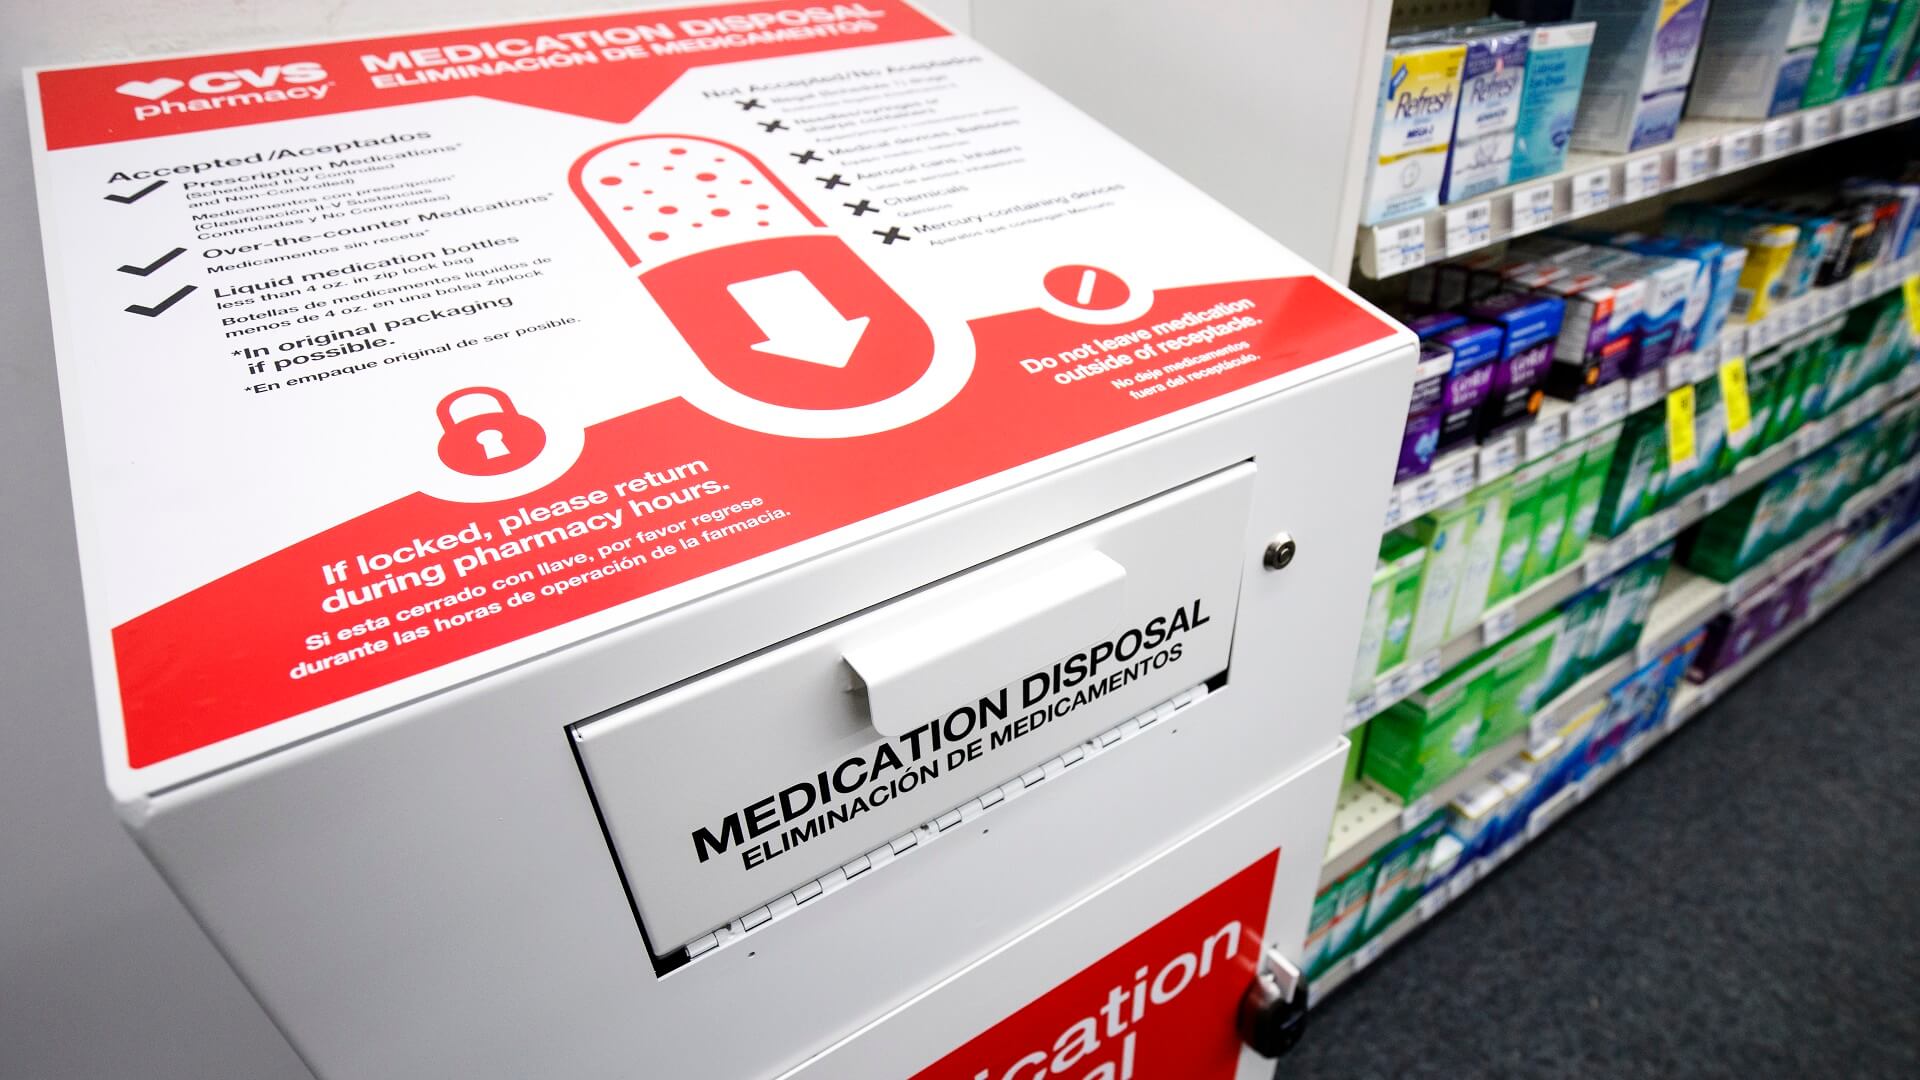 https://www.cvshealth.com/content/dam/enterprise/cvs-enterprise/images/news/2023/cvs-health-medication-disposal-kiosk-in-cvs-pharmacy-16x9.jpg